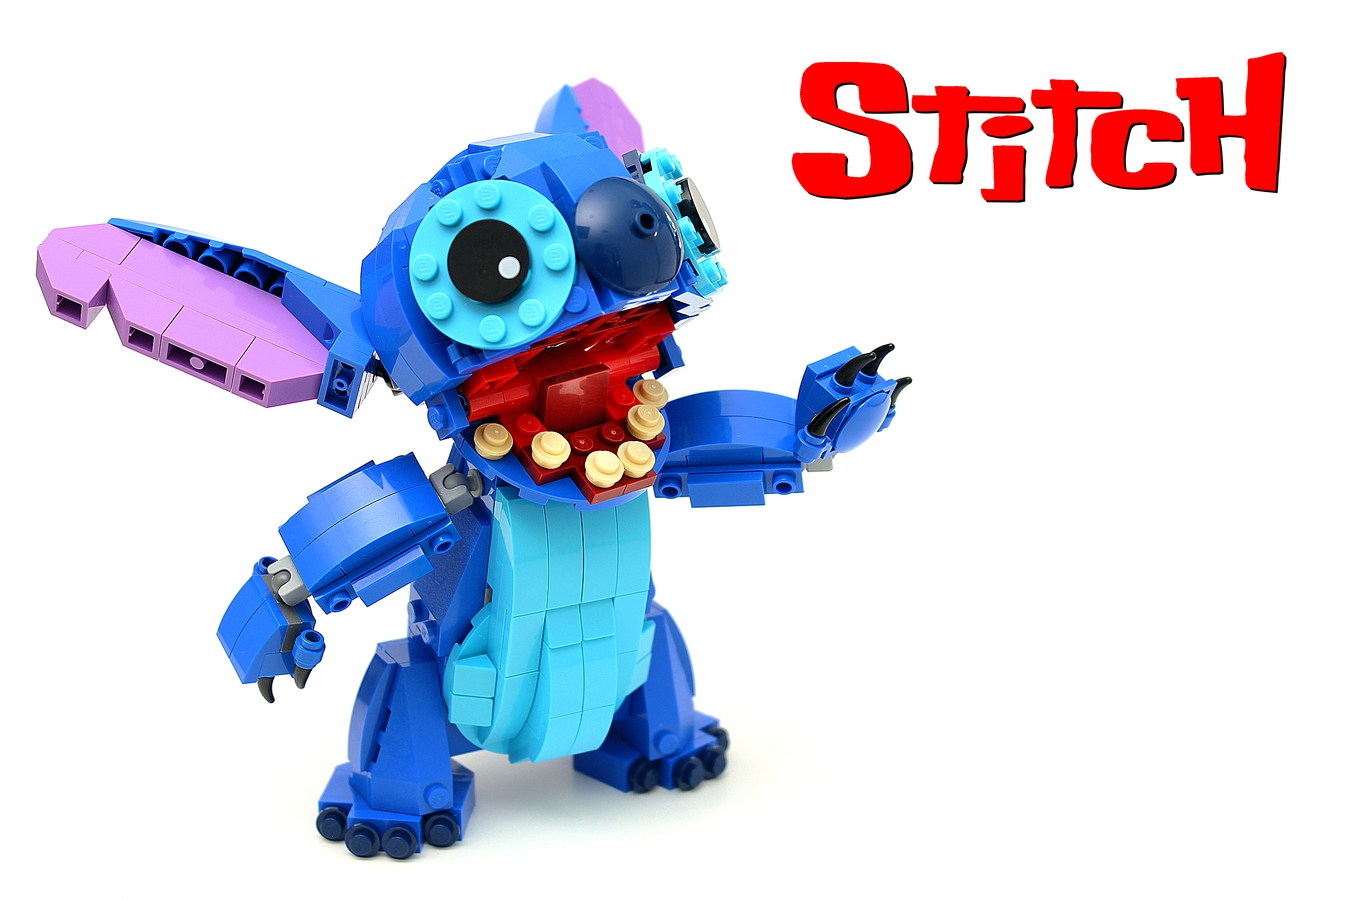 LEGO IDEAS - Lilo & Stitch Red One